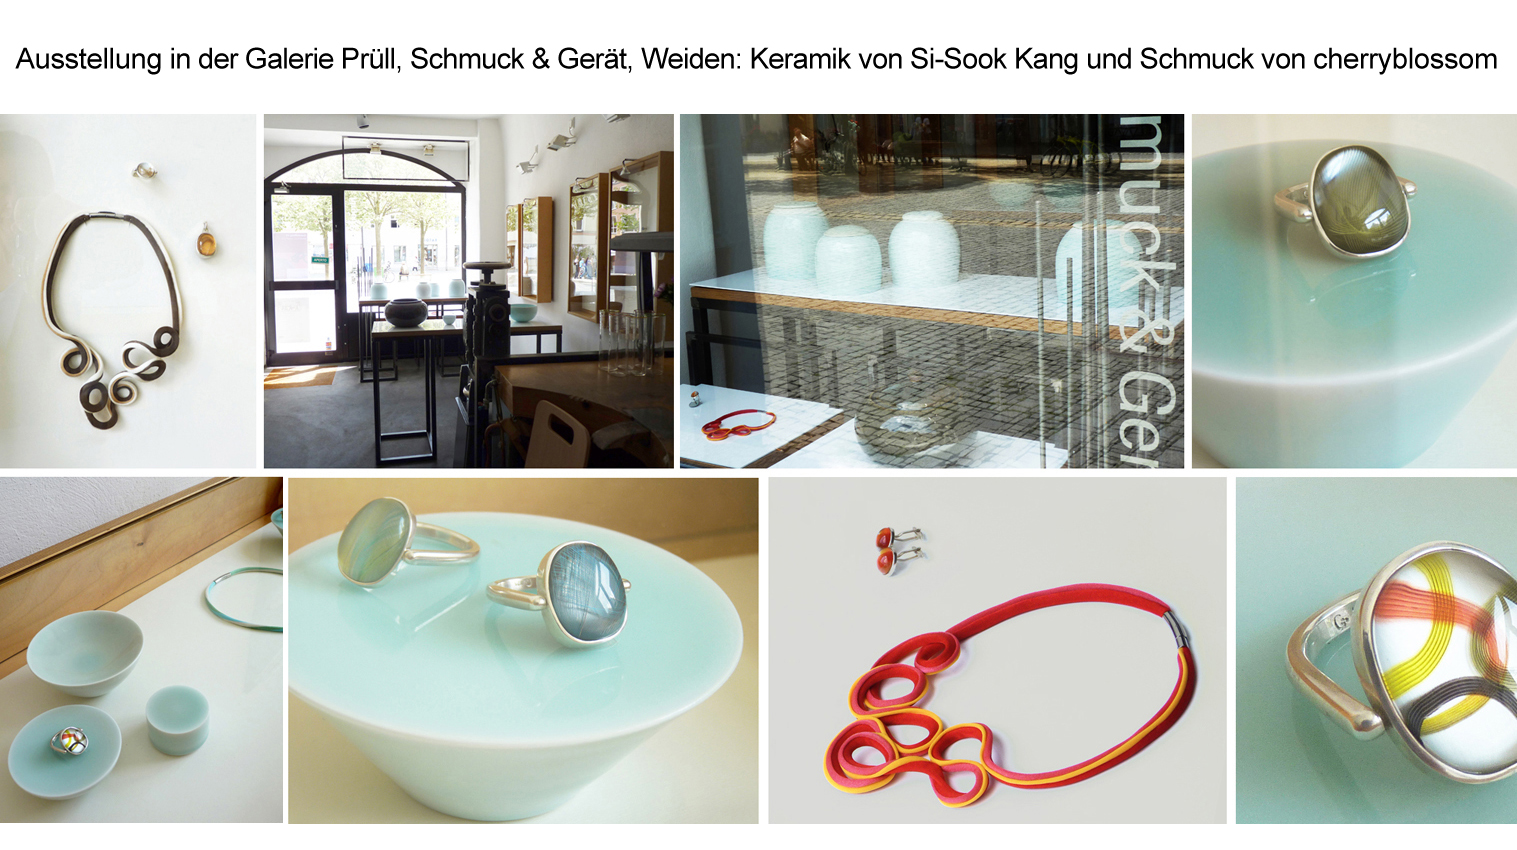 Ausstellung Galerie Prüll, Weiden, Keramik Si-Sook Kang, Schmuck cherryblossom